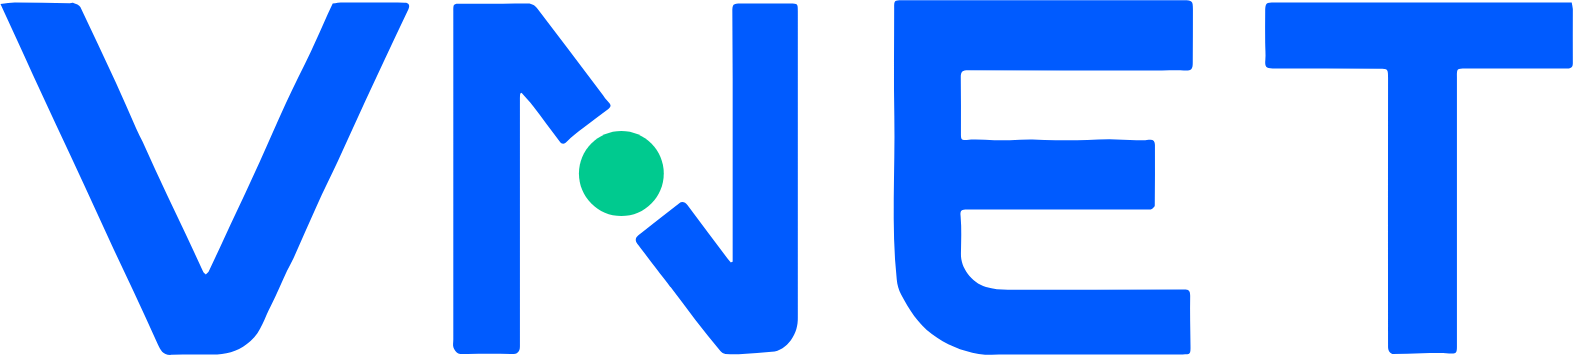 VNET Group logo (transparent PNG)